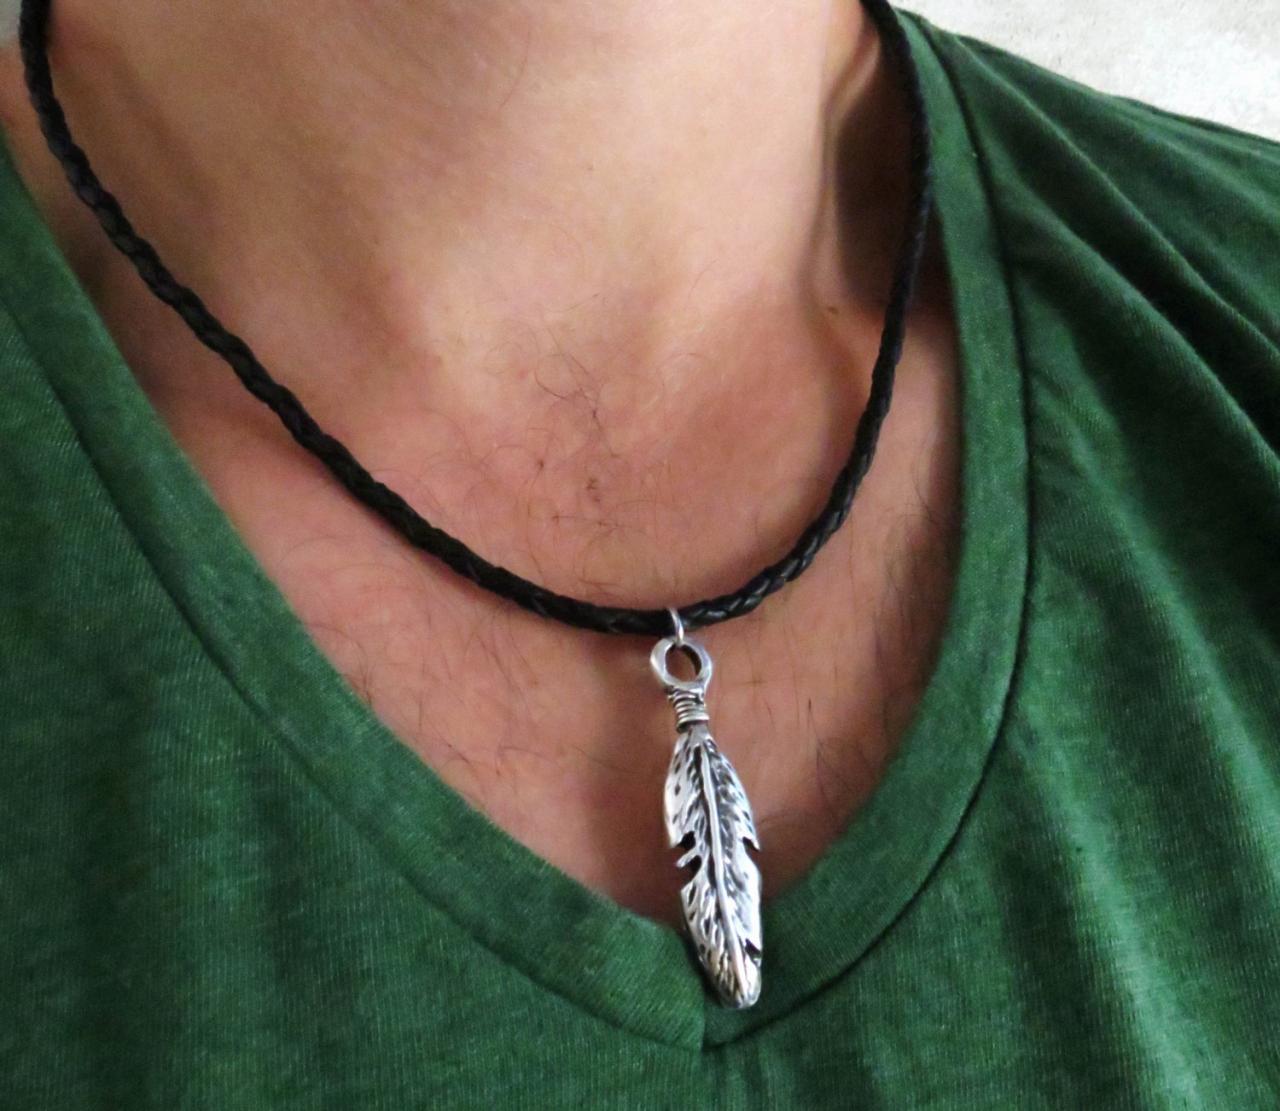 Men's Necklace - Men's Feather Necklace - Men's Leather Necklace - Men's Jewelry - Men's Gift -